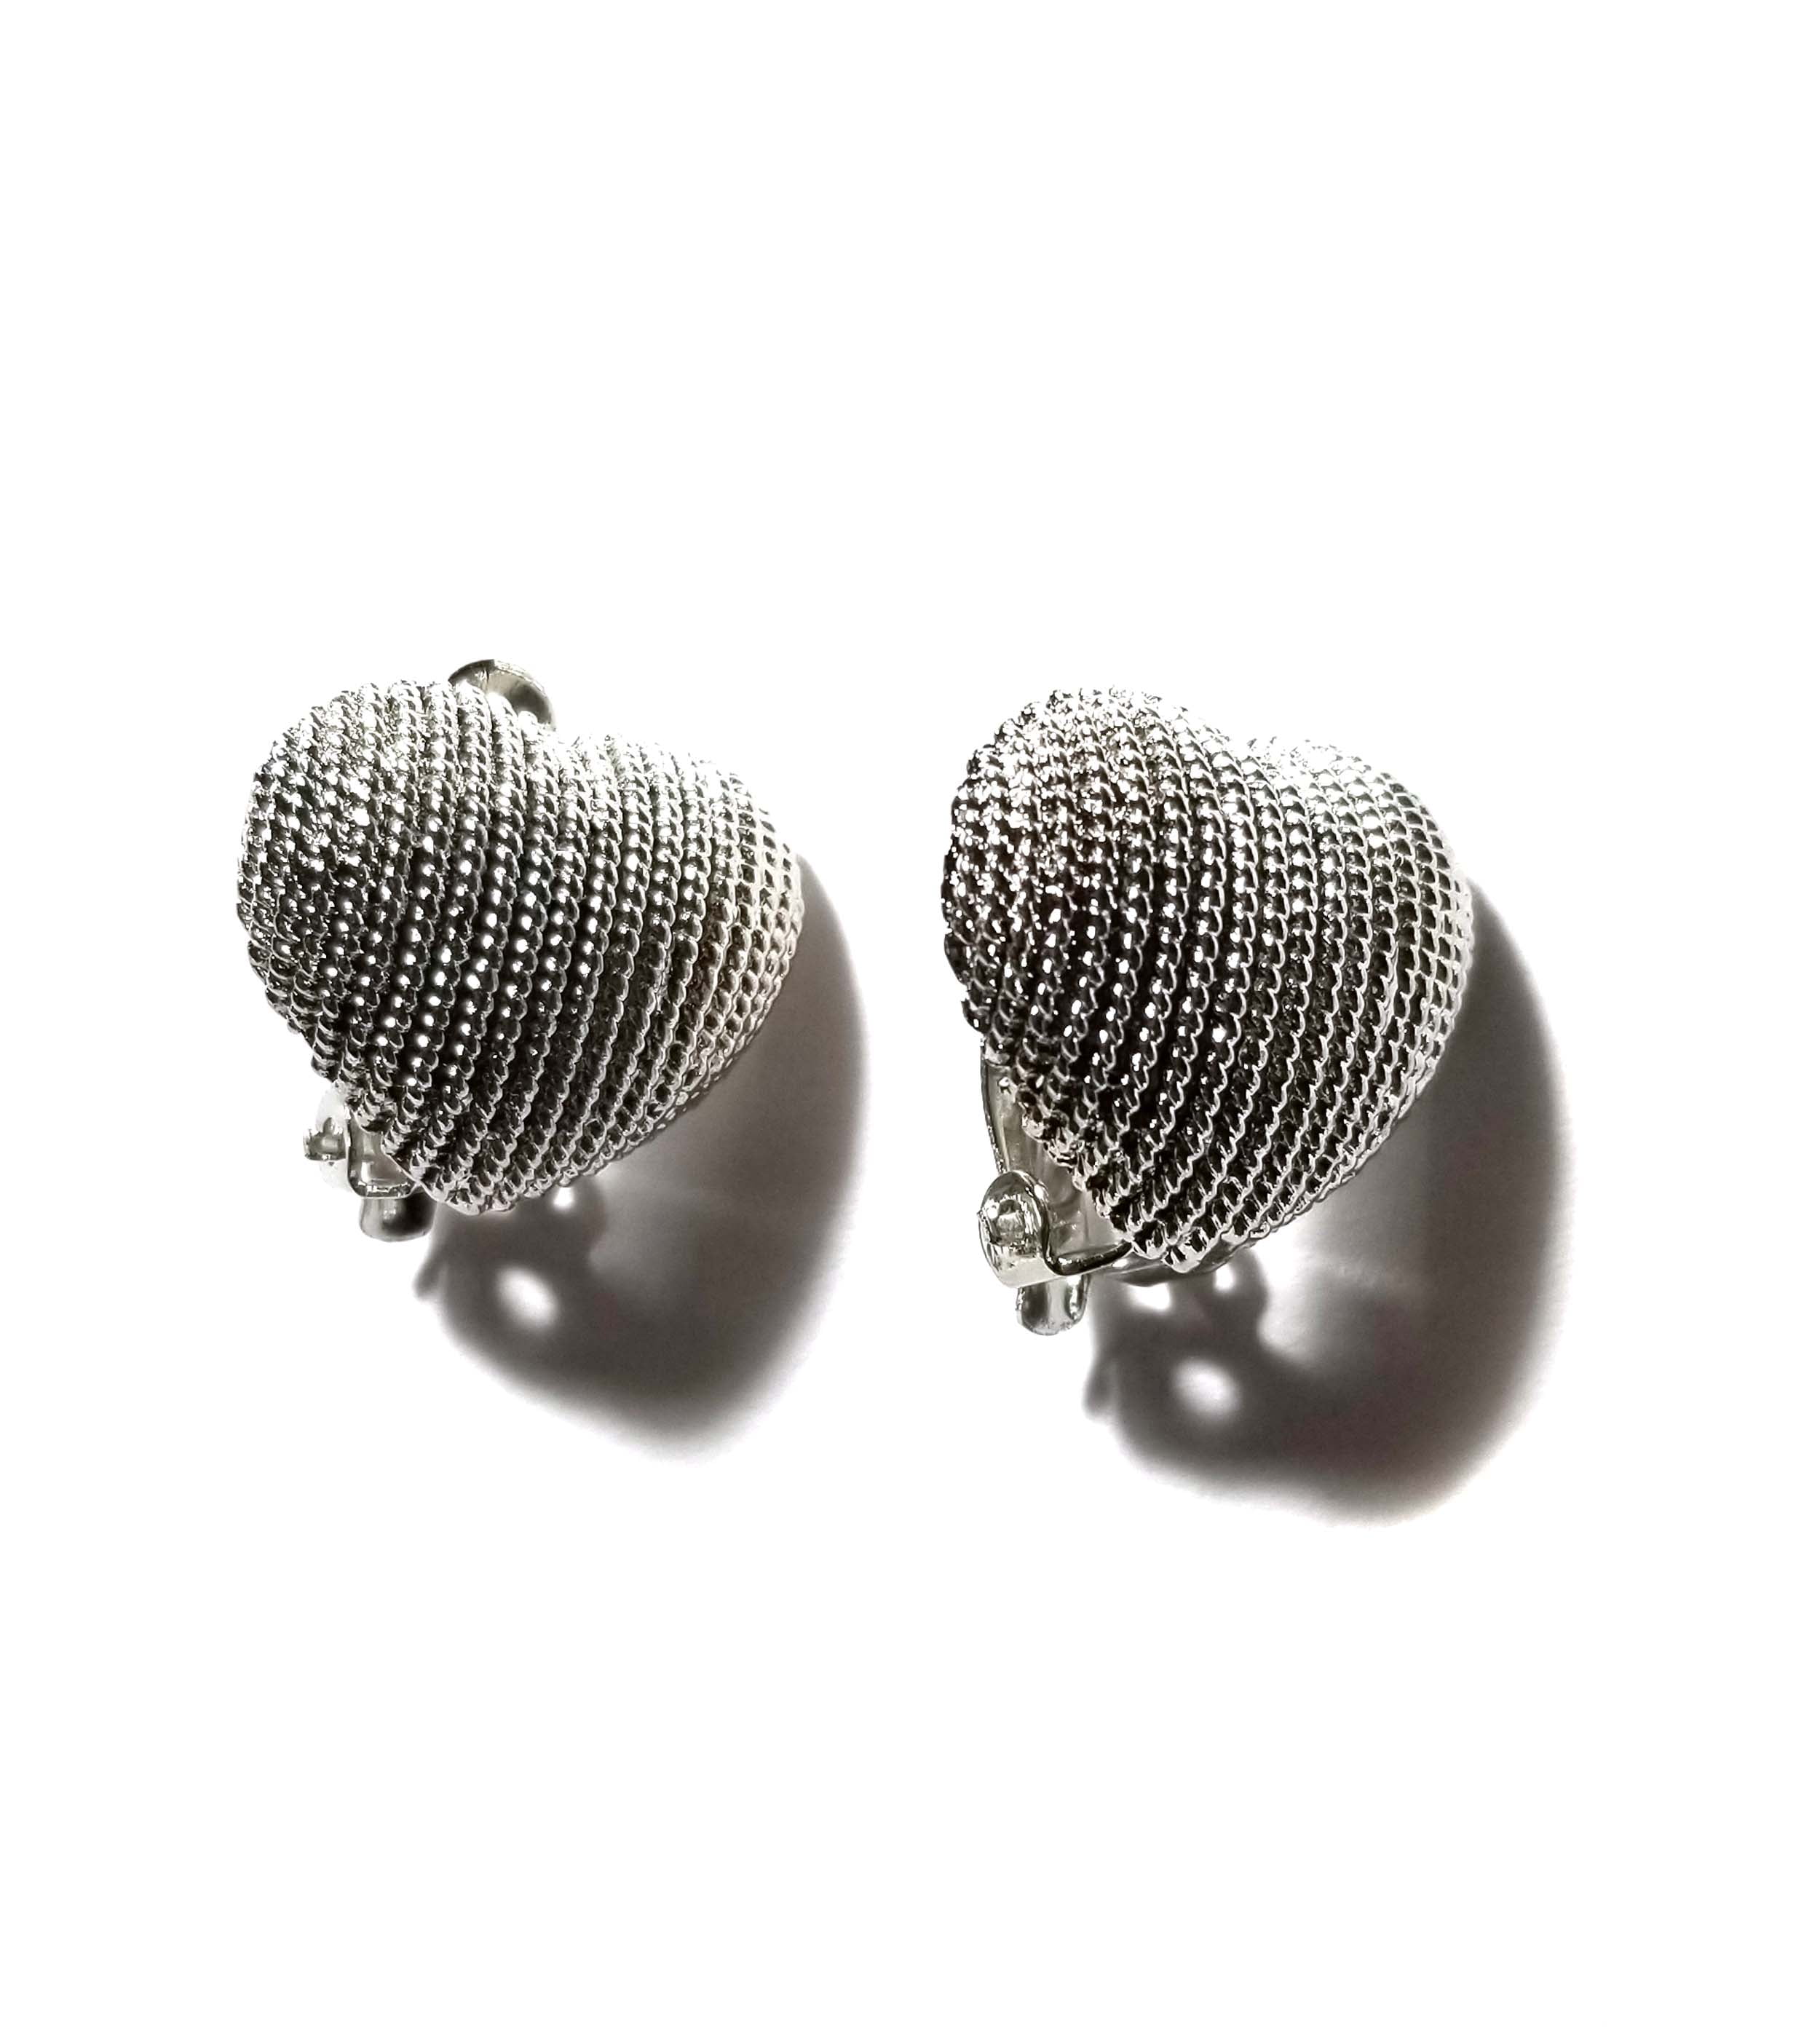 Heart Clip-on Earrings Silver Tone 0.75 inch Heart Earrings - Walmart.com